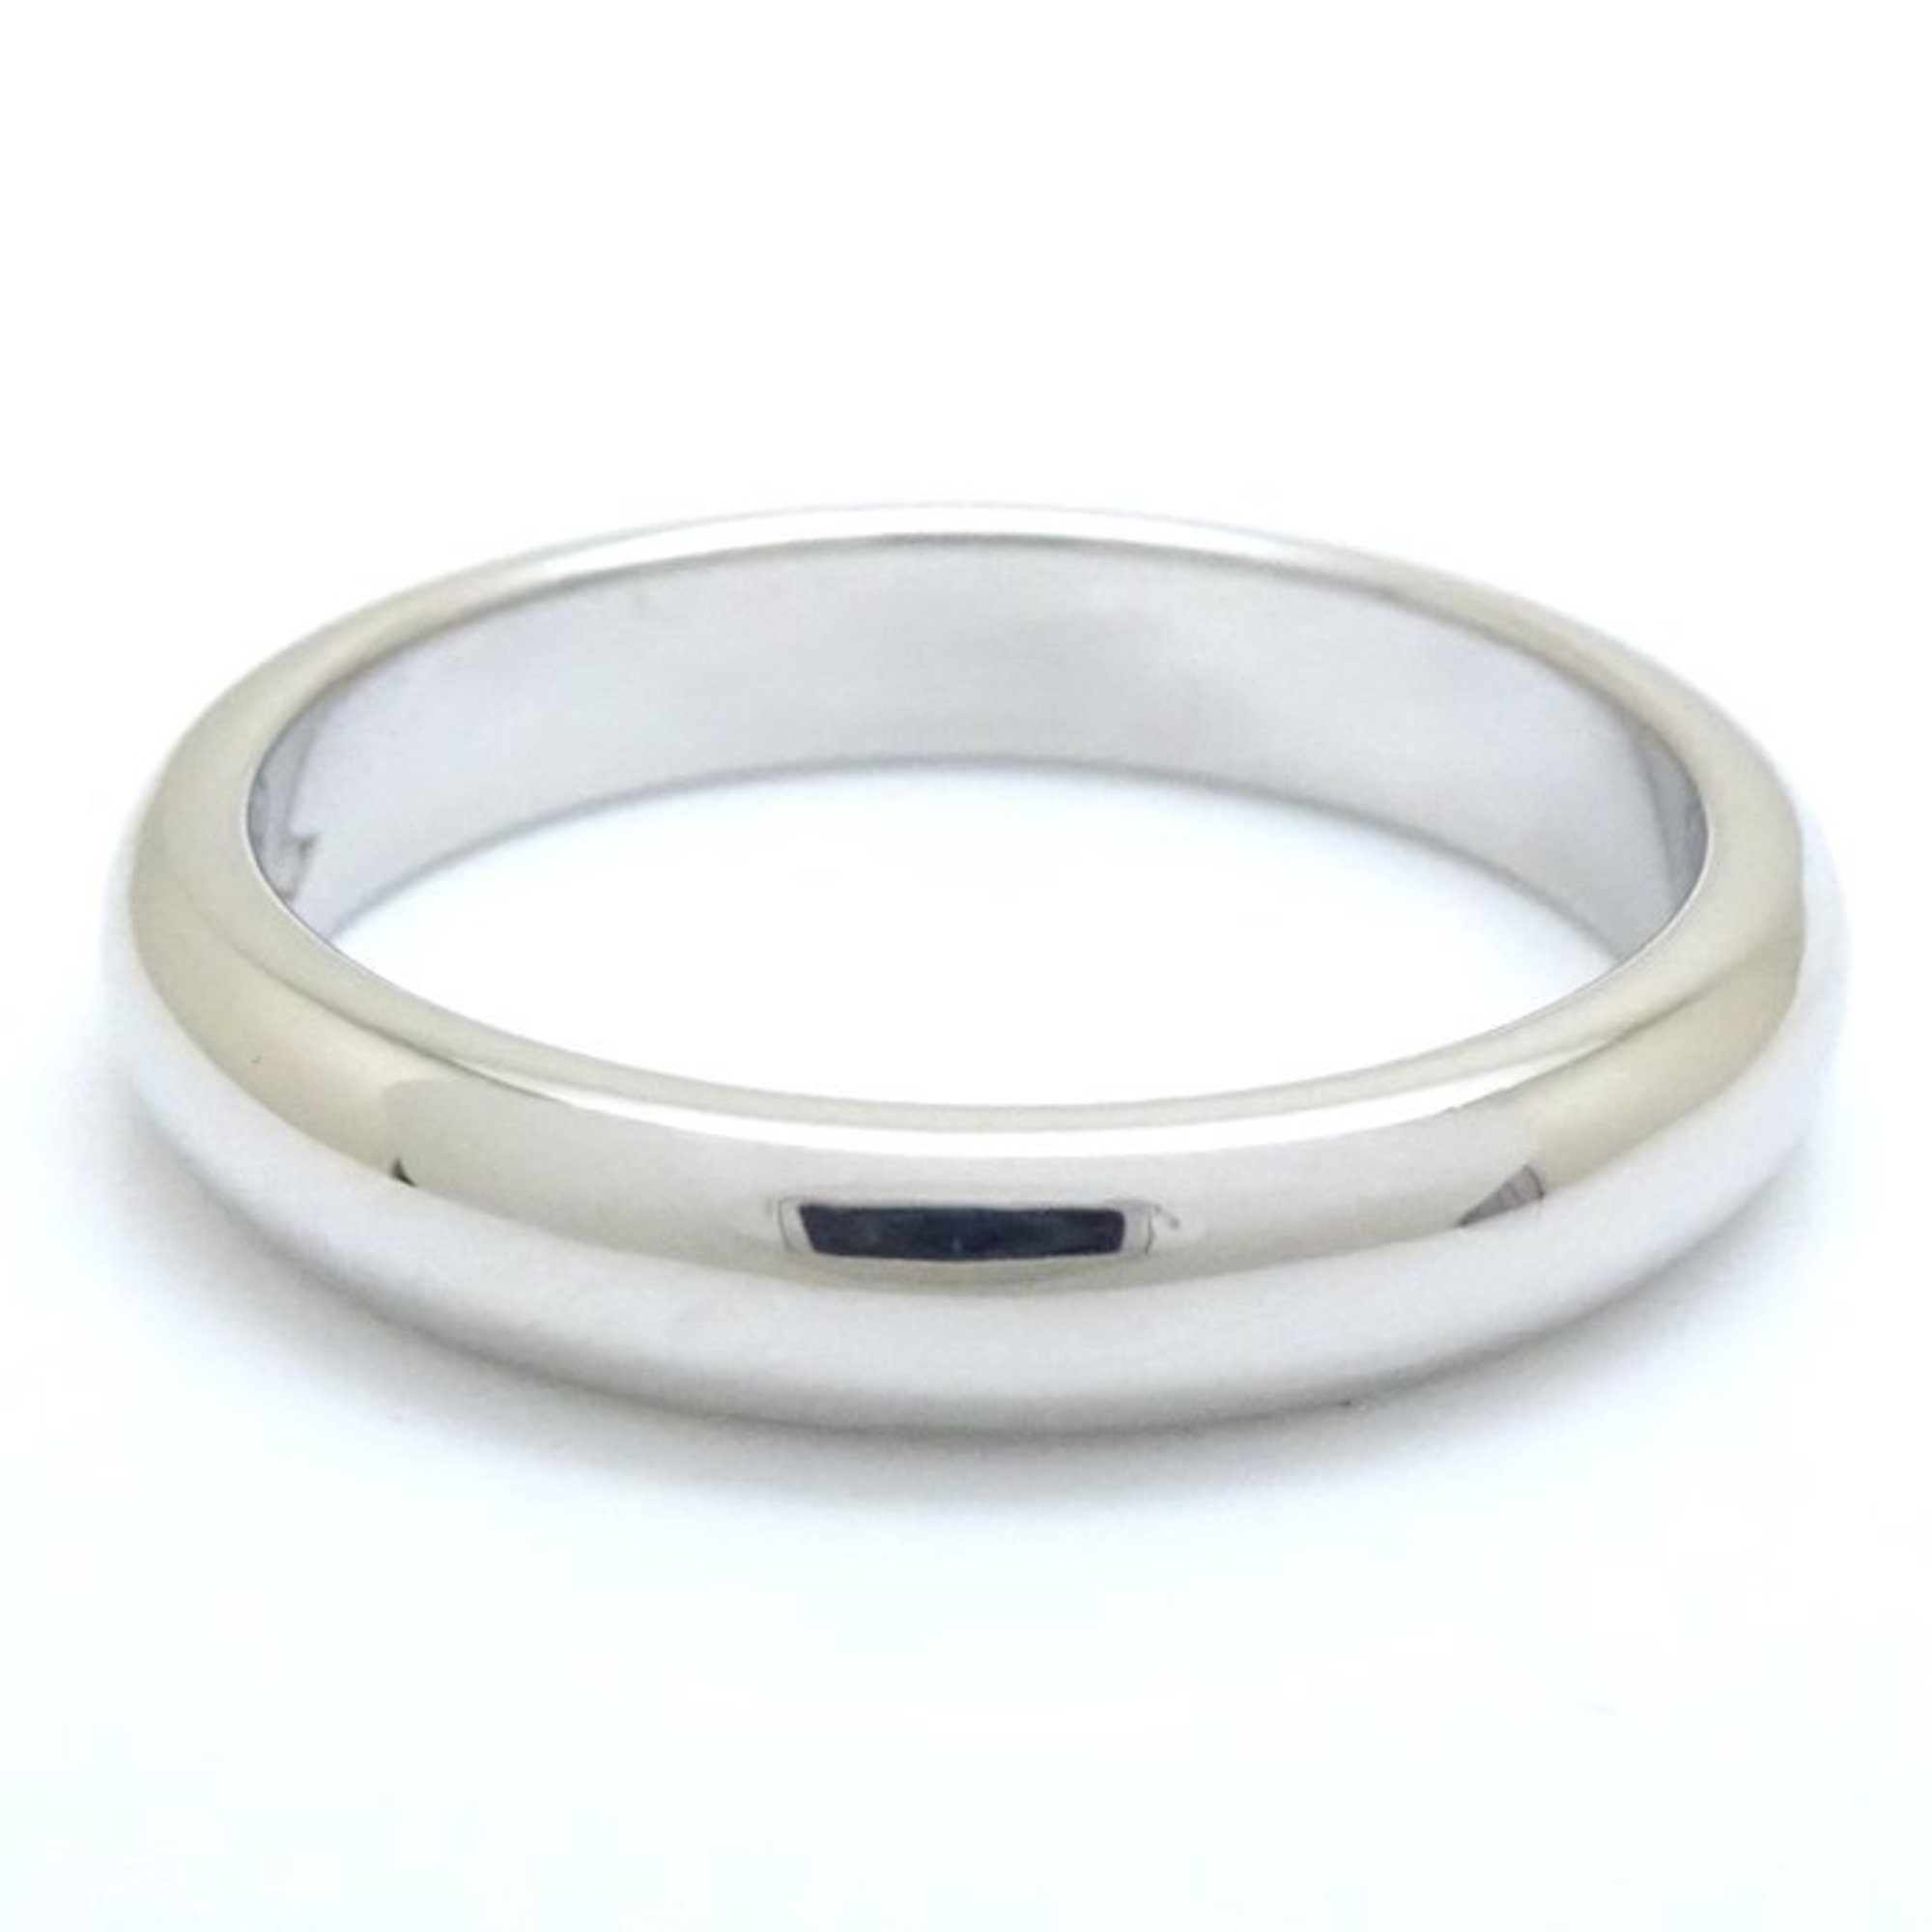 CARTIER Cartier Wedding Ring #50 3.4mm Pt950 Platinum 291851